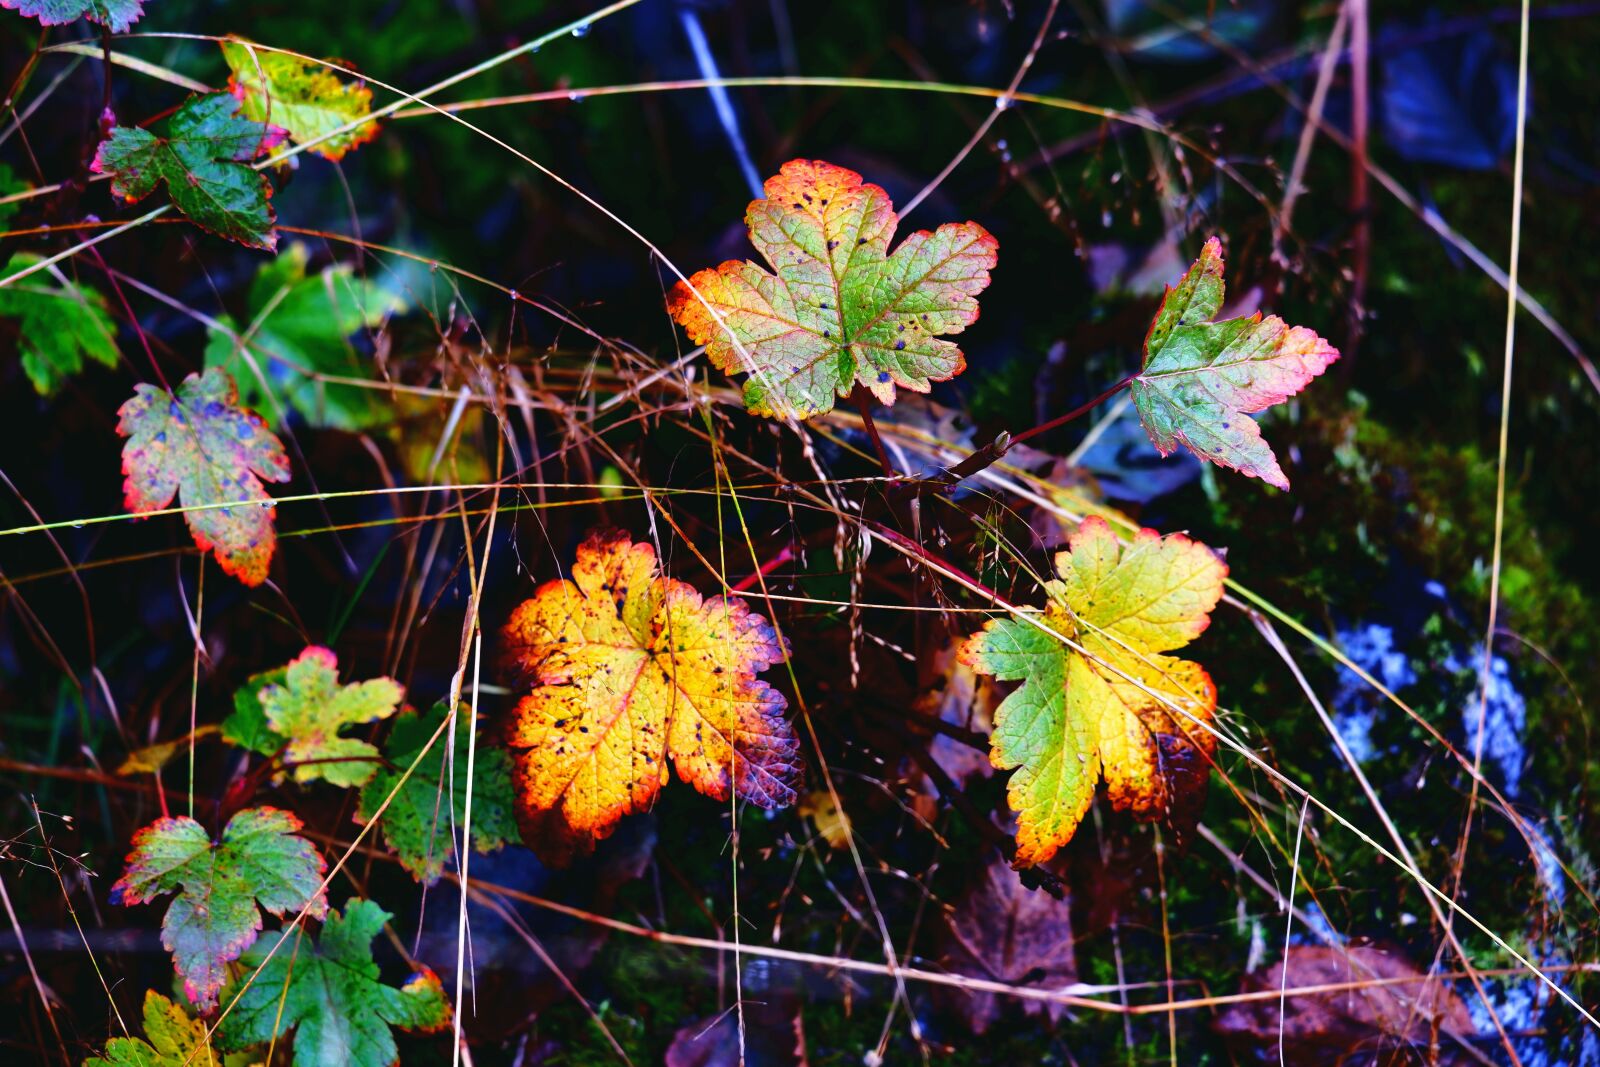 Fujifilm X-A5 sample photo. Nature, autumn, foliage photography